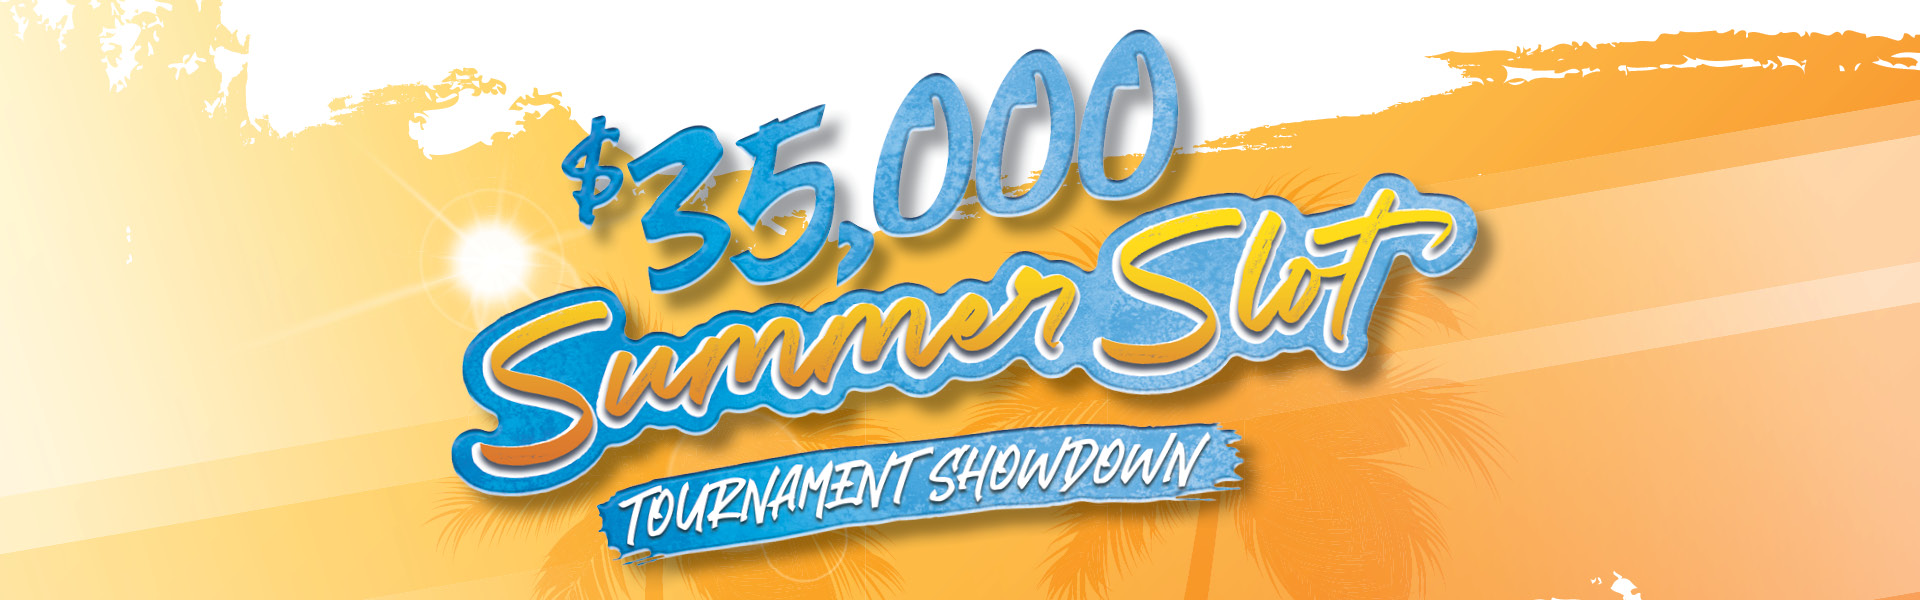 $35,000 Summer Slot Tournament